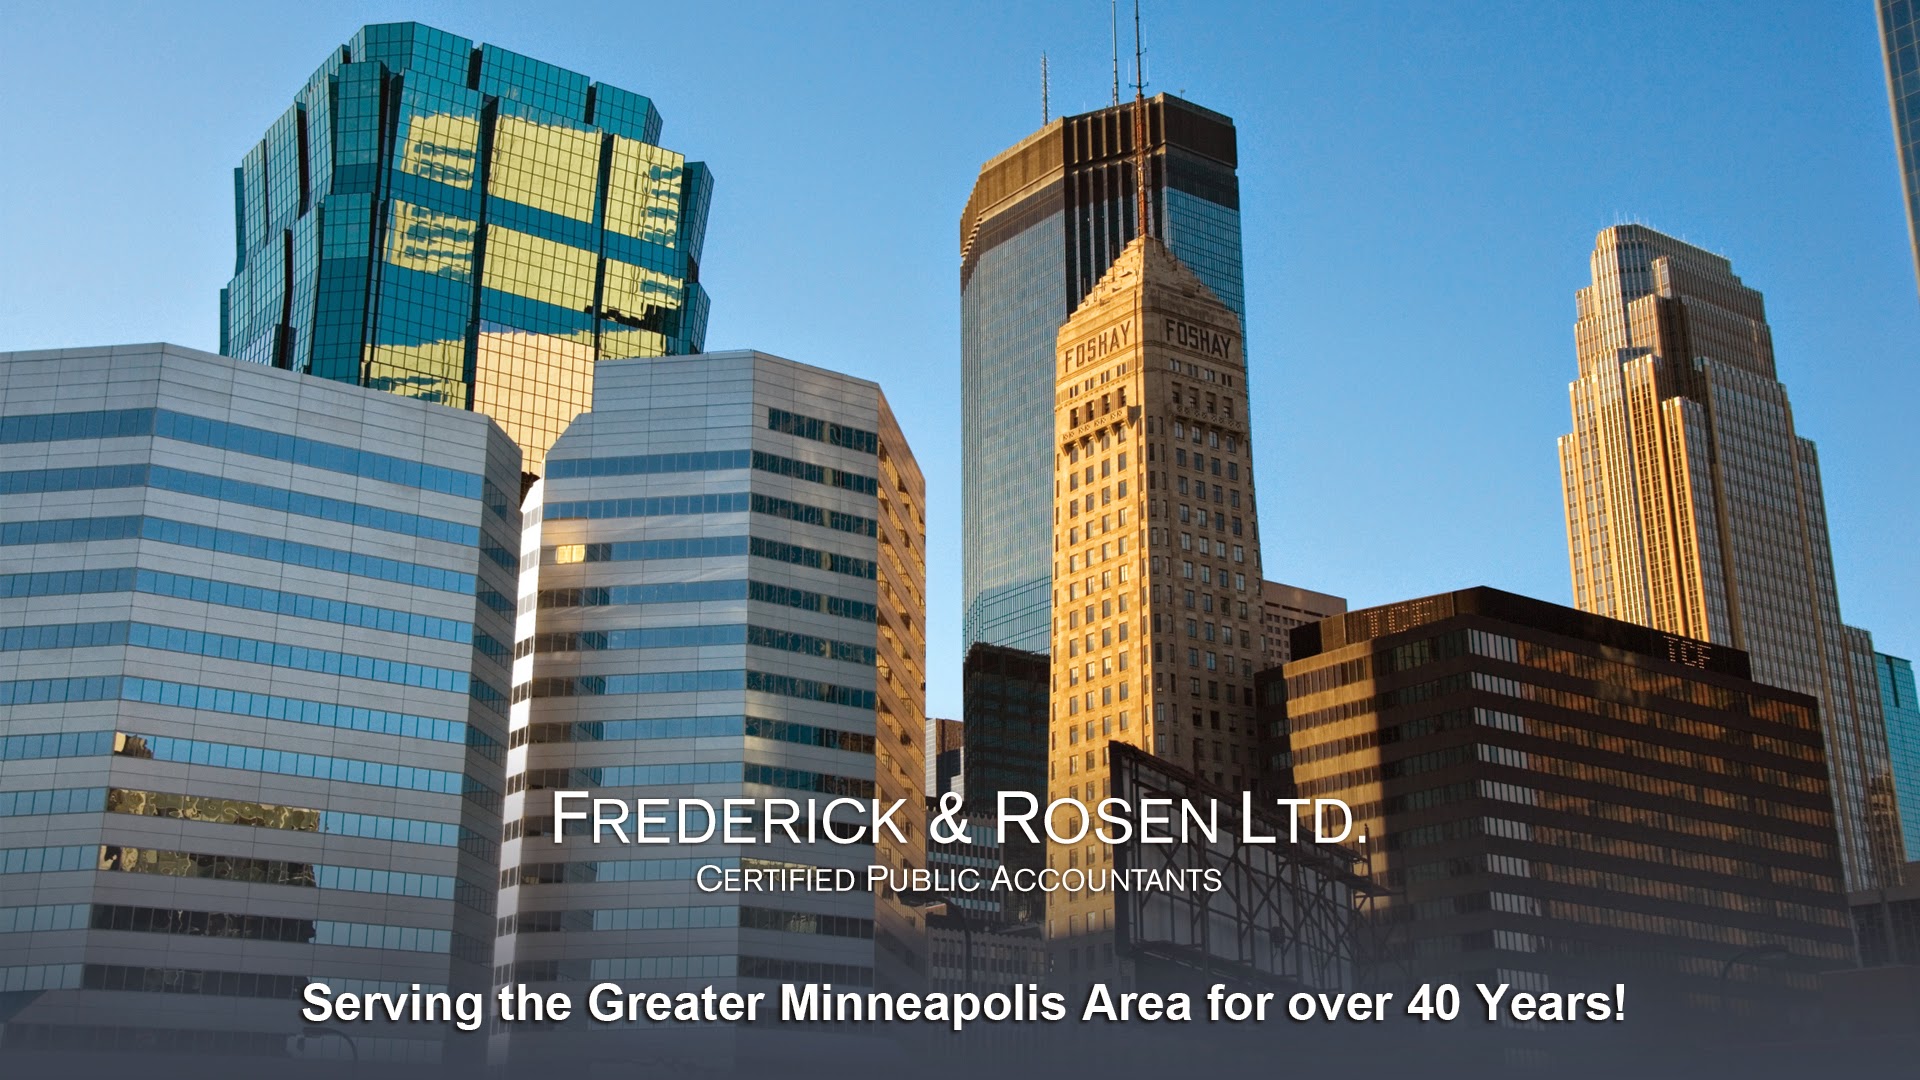 Frederick & Rosen Ltd: Accountants 5922 Excelsior Blvd, St Louis Park Minnesota 55416